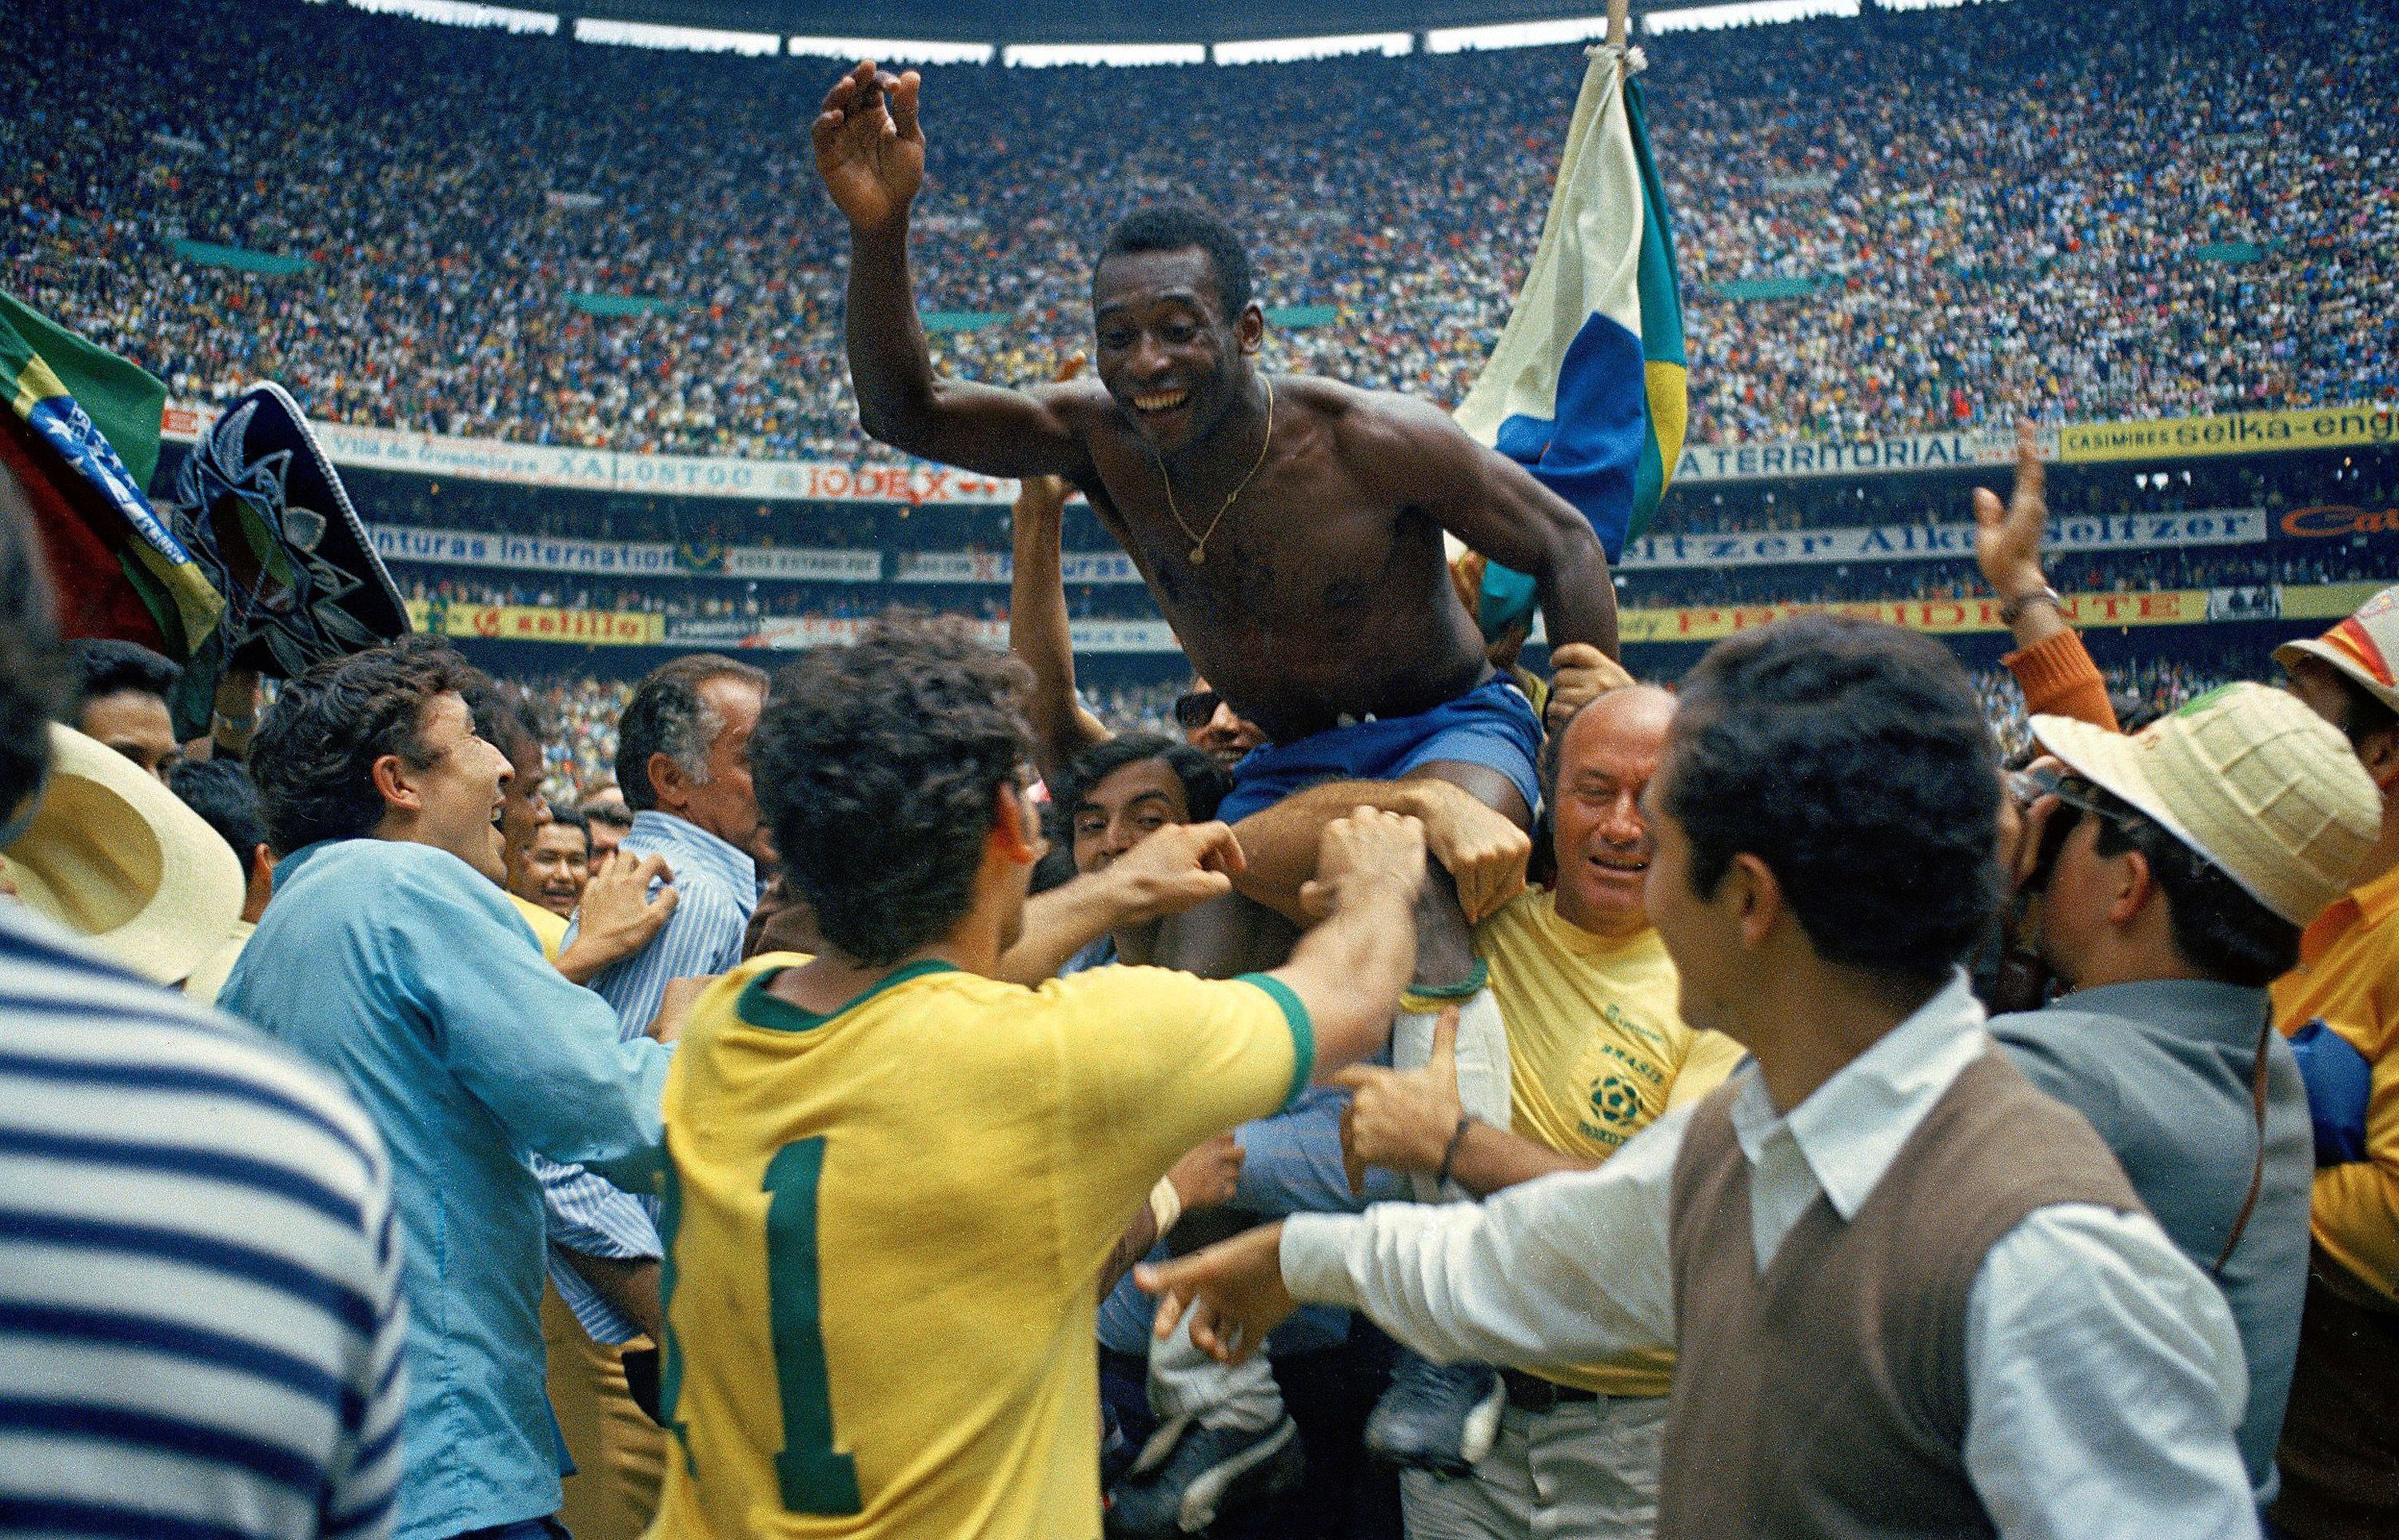 Portato in trionfo dopo la sua ultima vittoria dei mondiali nel 1970, in finale a spese proprio della nazionale italiana